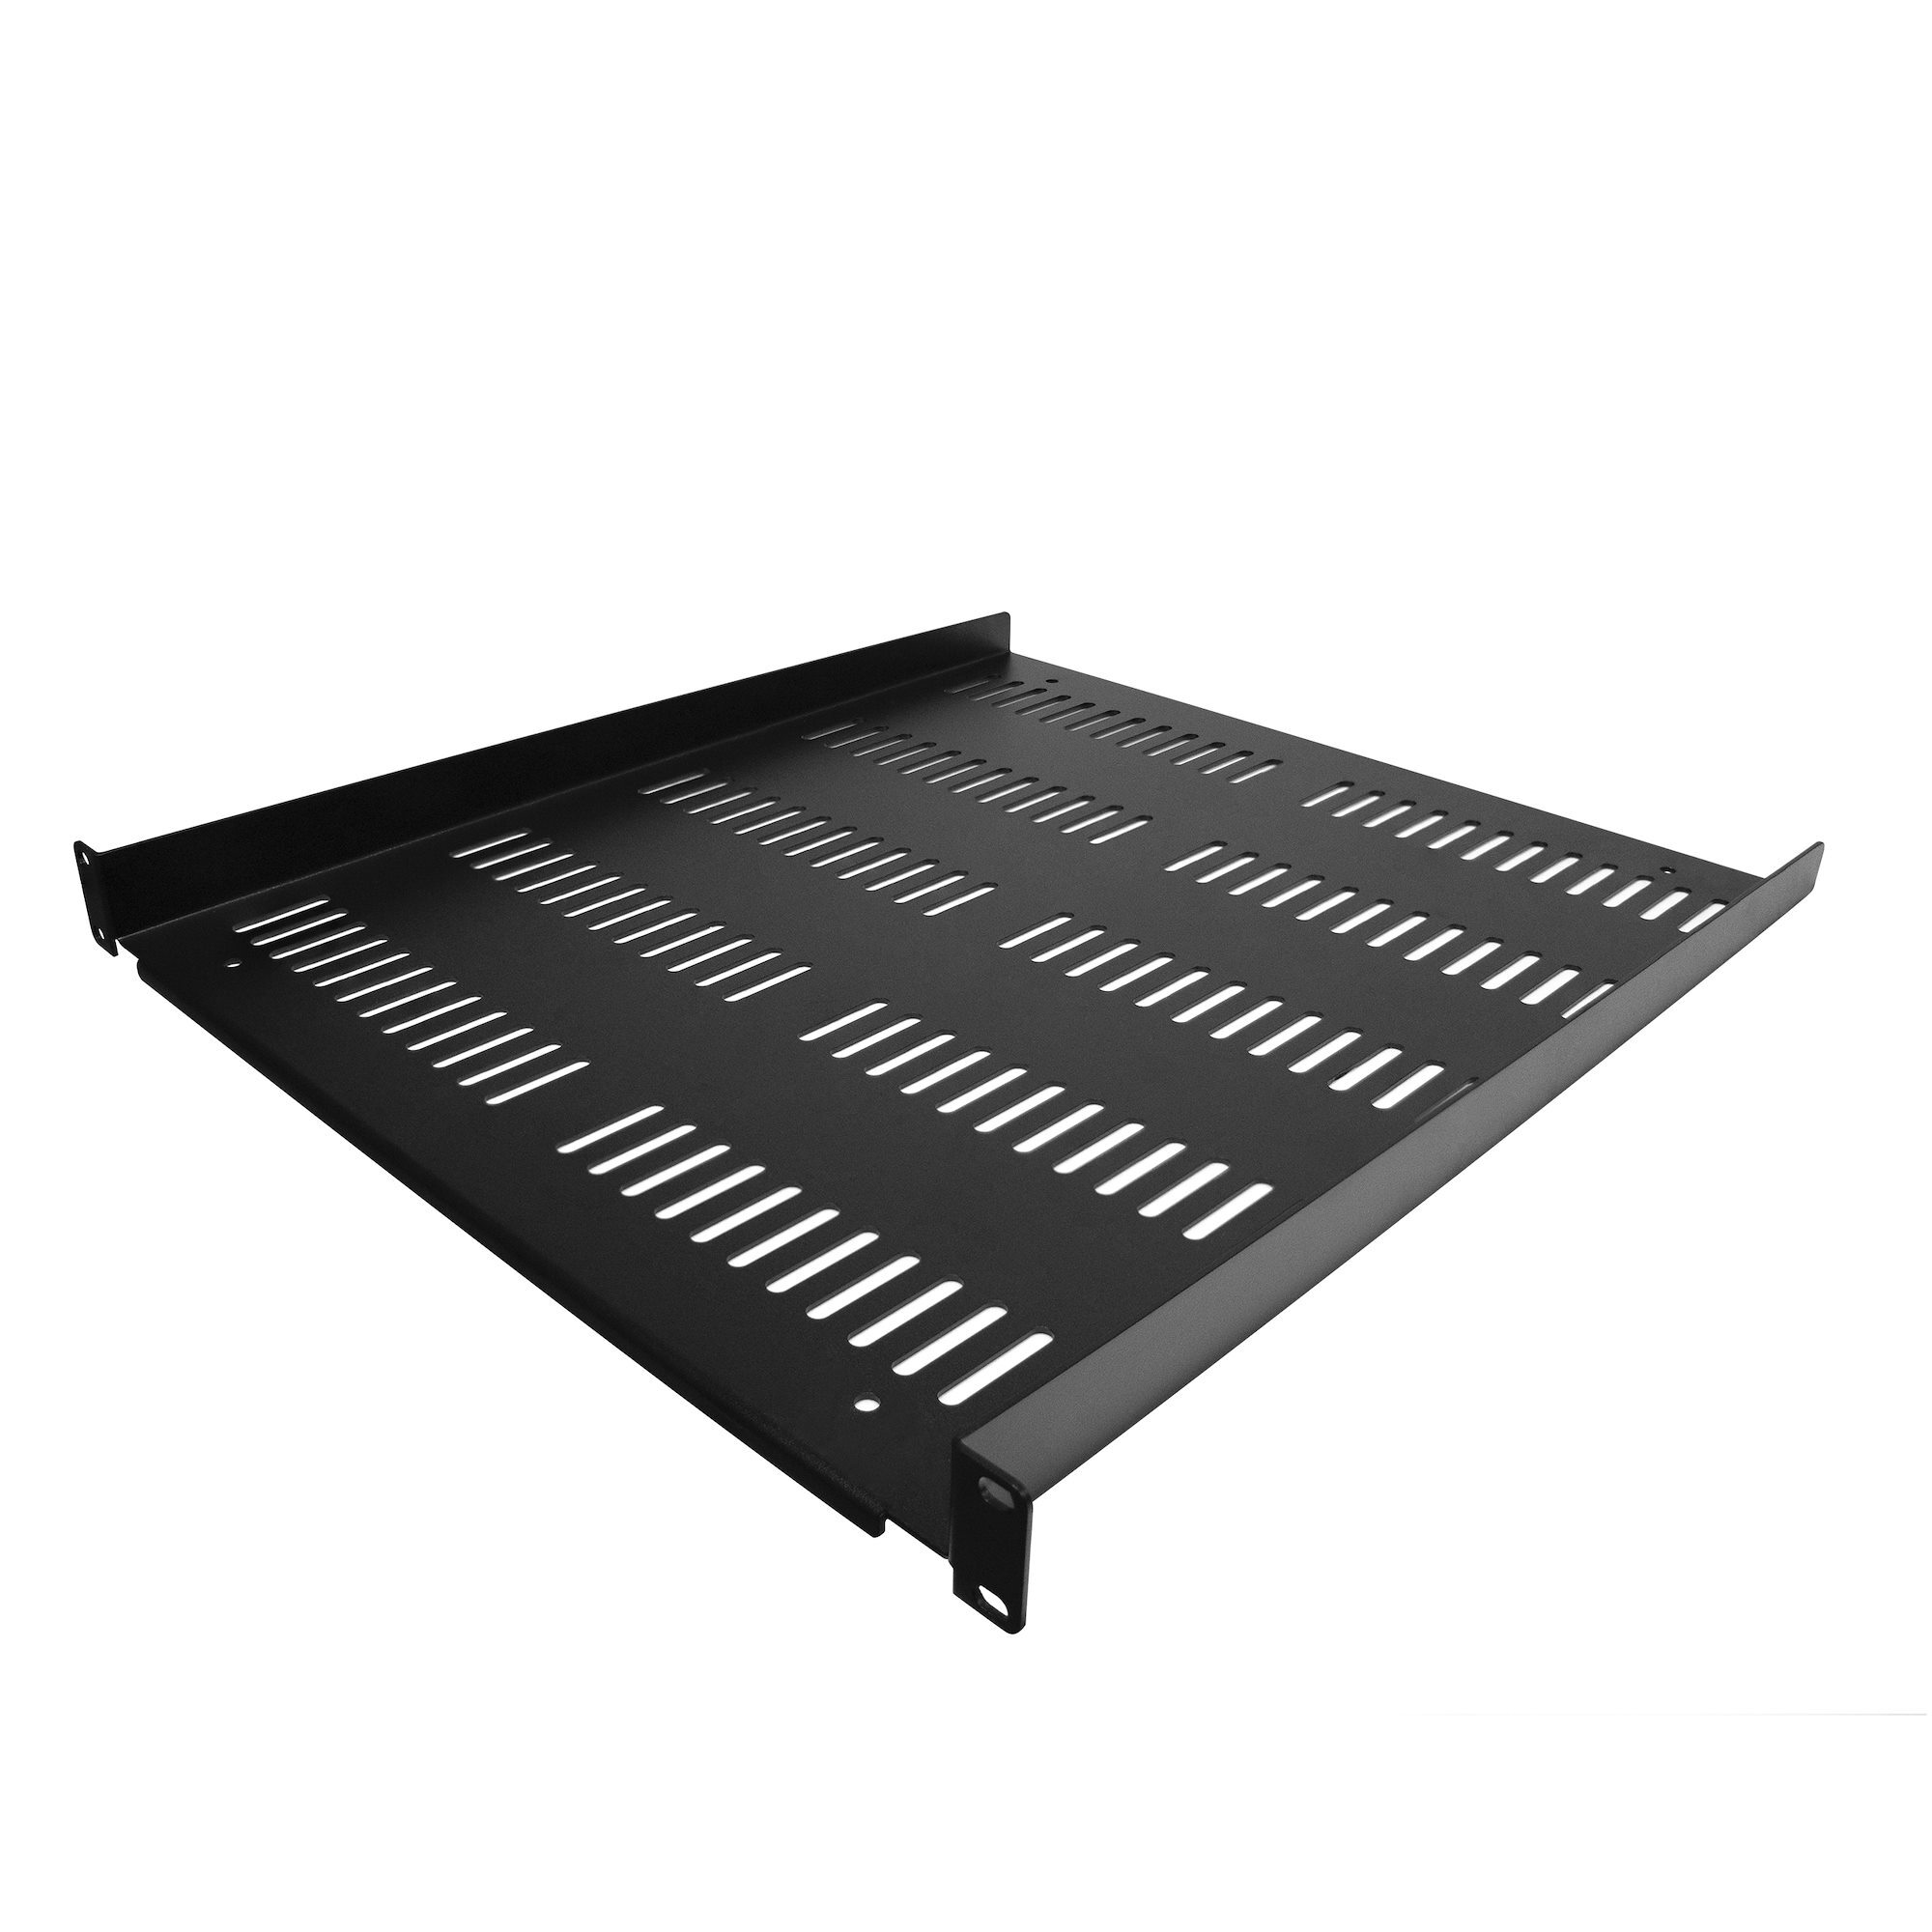 StarTech.com 1U Rack Shelf - Universele Geventileerde 19 inch Server Rack Plank/Lade voor AV/Data/Netwerk Apparatuur – Cantilever/Uitkragende Ligger – Duurzaam Ontwerp – Max. 25kg - Diepte 50 cm (20”)